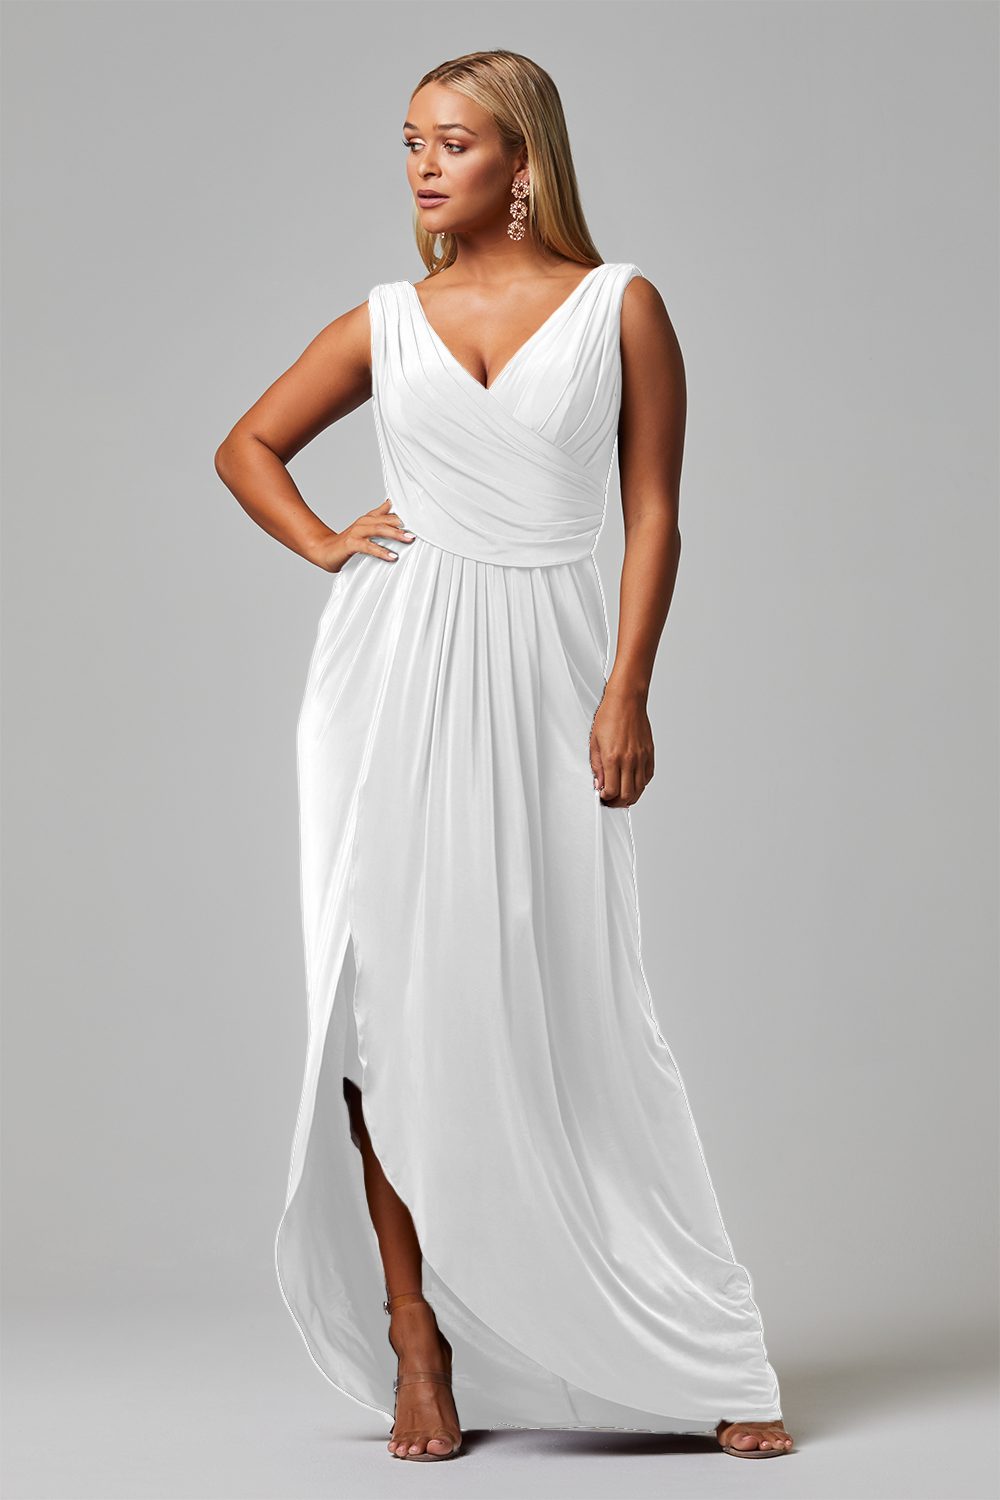 Kalani Dress in Vintage White By Tania Olsen TO817 - ElissaJay Boutique